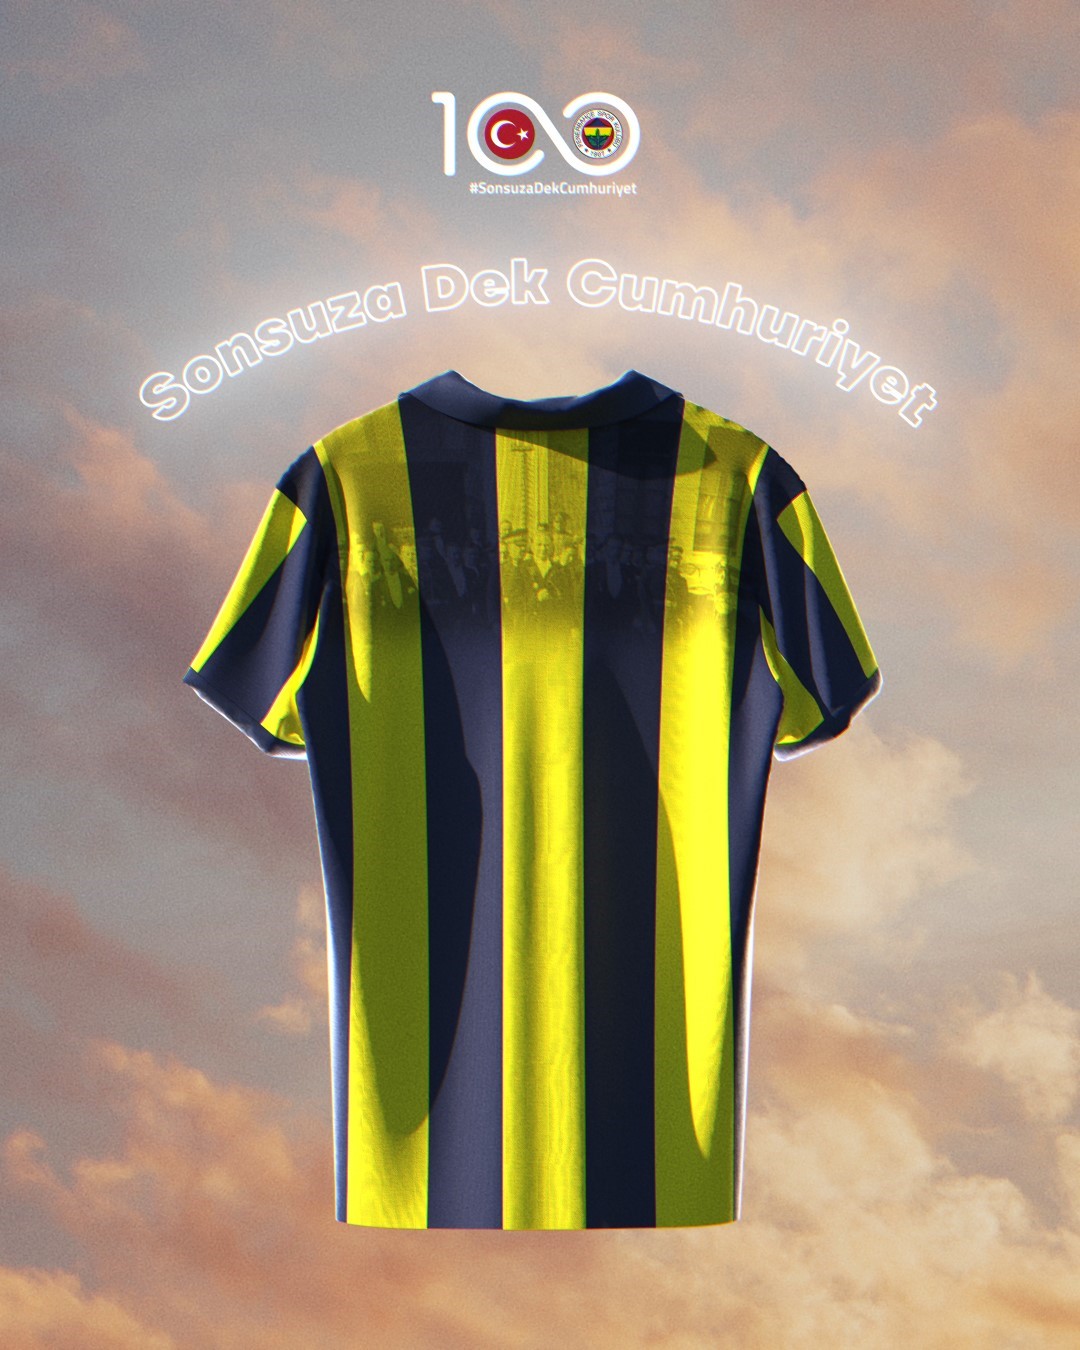 Fenerbahçe, 29 Ekim’de sahaya Cumhuriyet’in 100. yılına özel formayla çıkacak